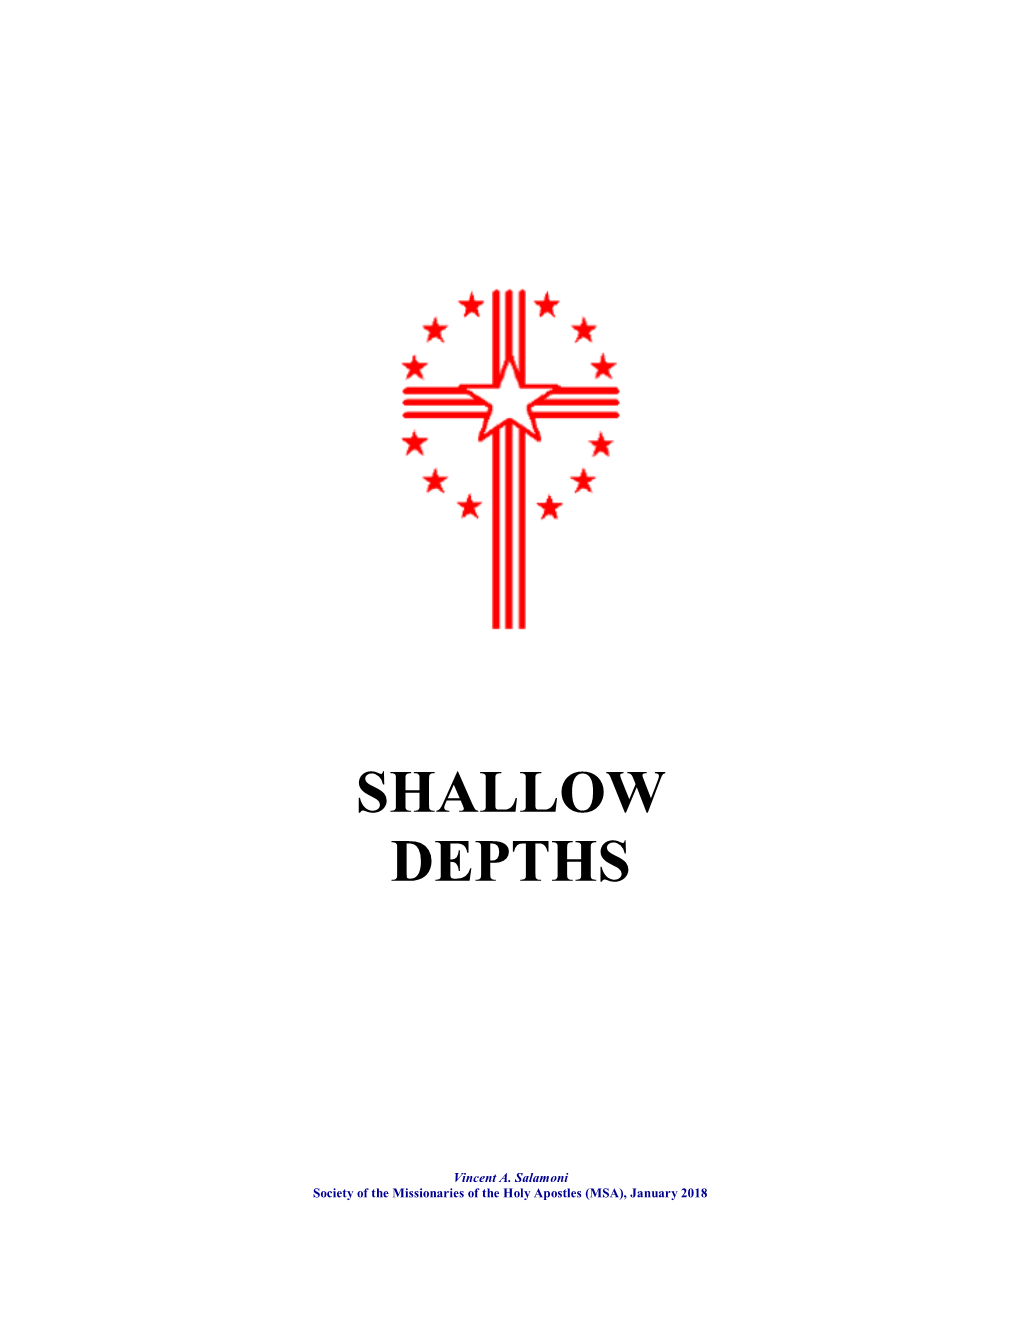 Shallow Depths